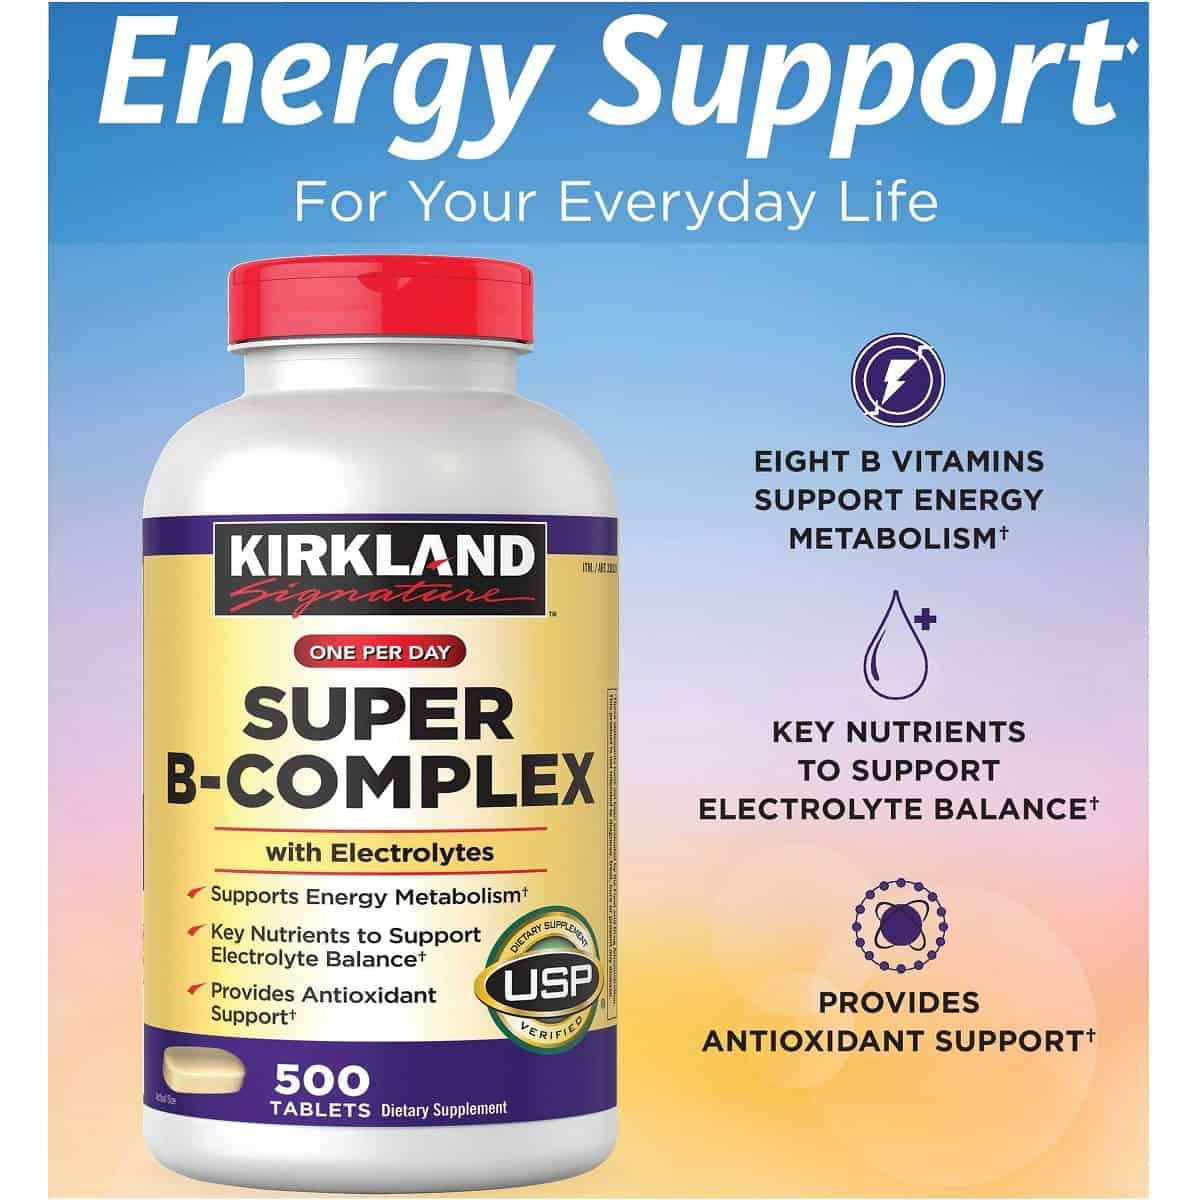 Kirkland Signature – Super B-Complex with Electrolytes 500 Tablets + Vitamin D3 2000IU, 600 Softgels + Vitamin B12 5000mcg, Cherry Flavor, 300 Tablets (Bundle of 3 Units Total)